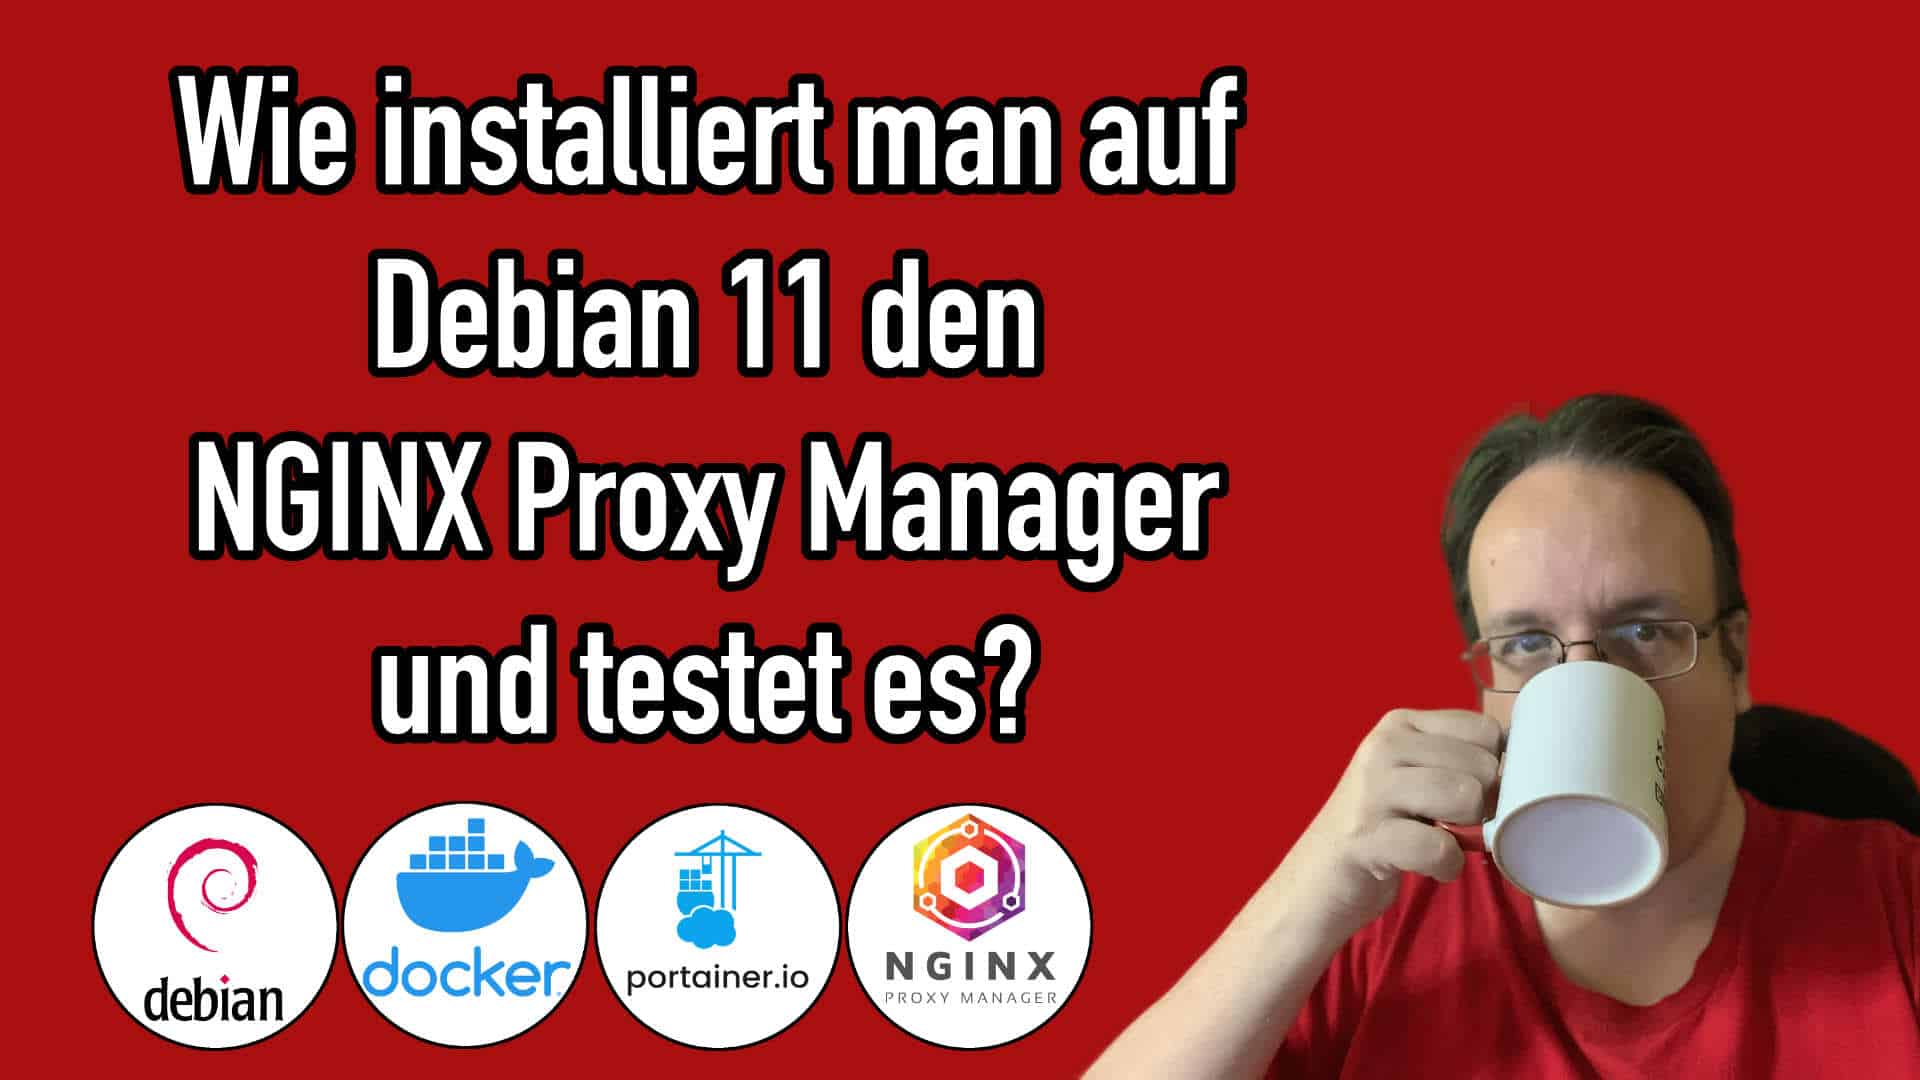 Wie installiert man auf einem Debian Server den NGINX Proxy Manager?